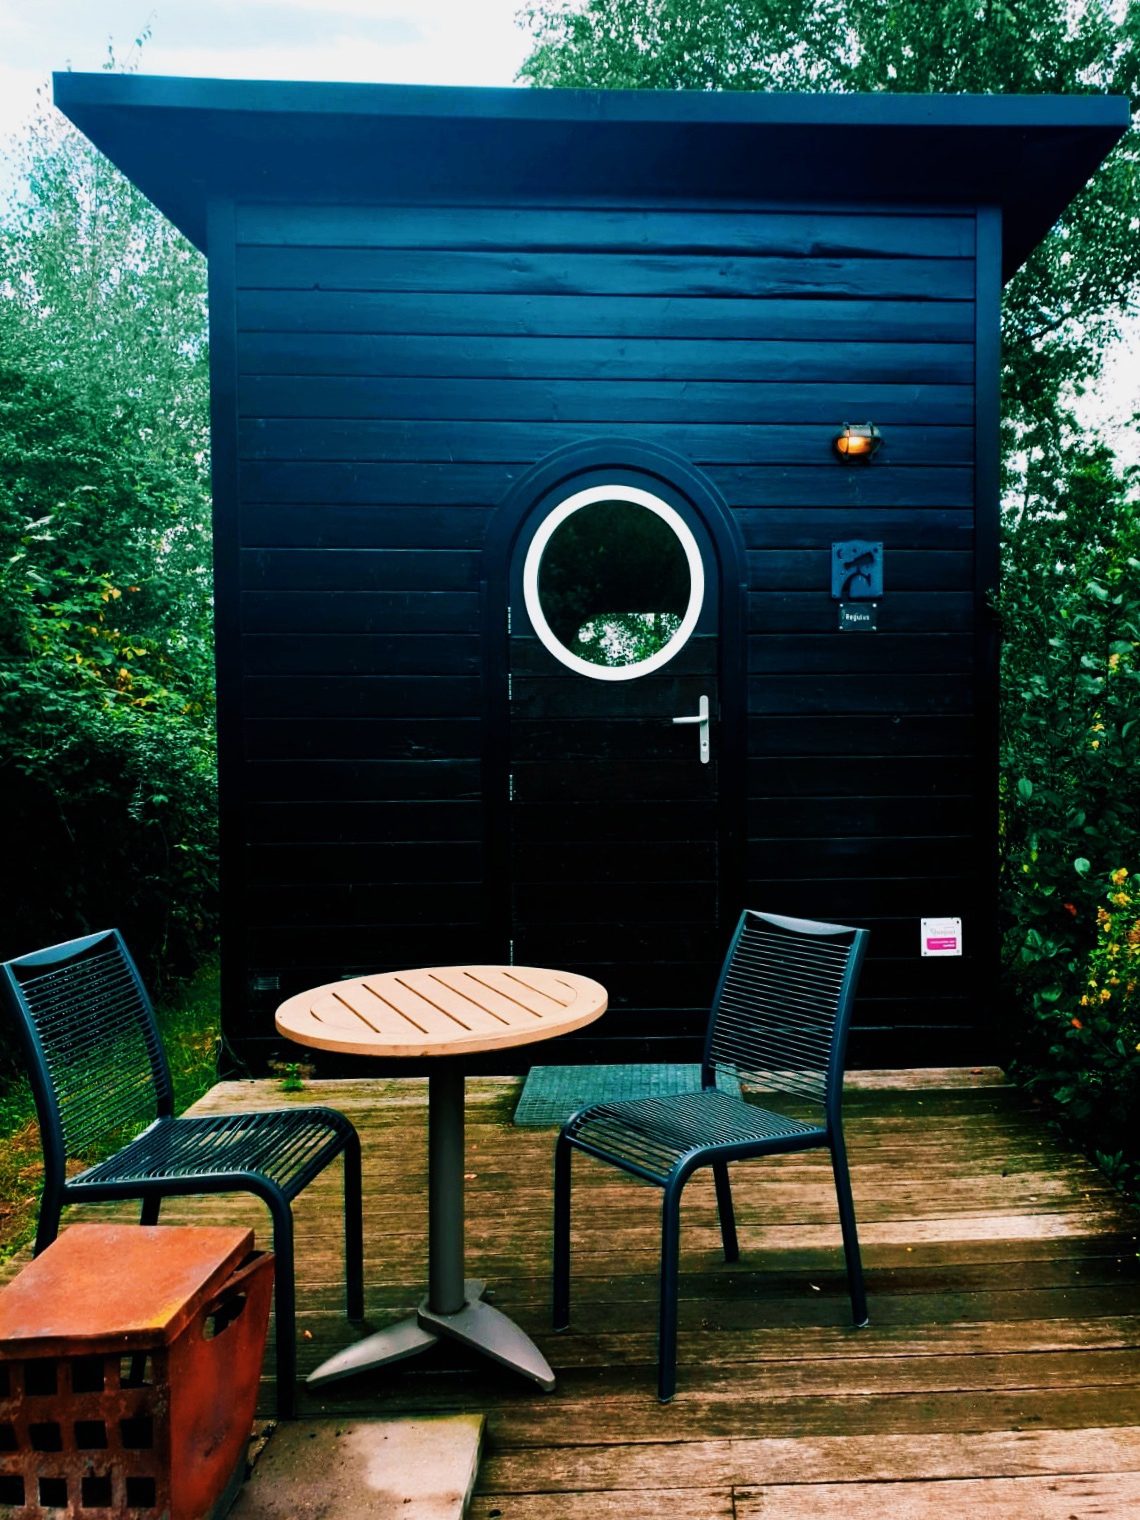 Sterren kijken in een tiny house in Twente.